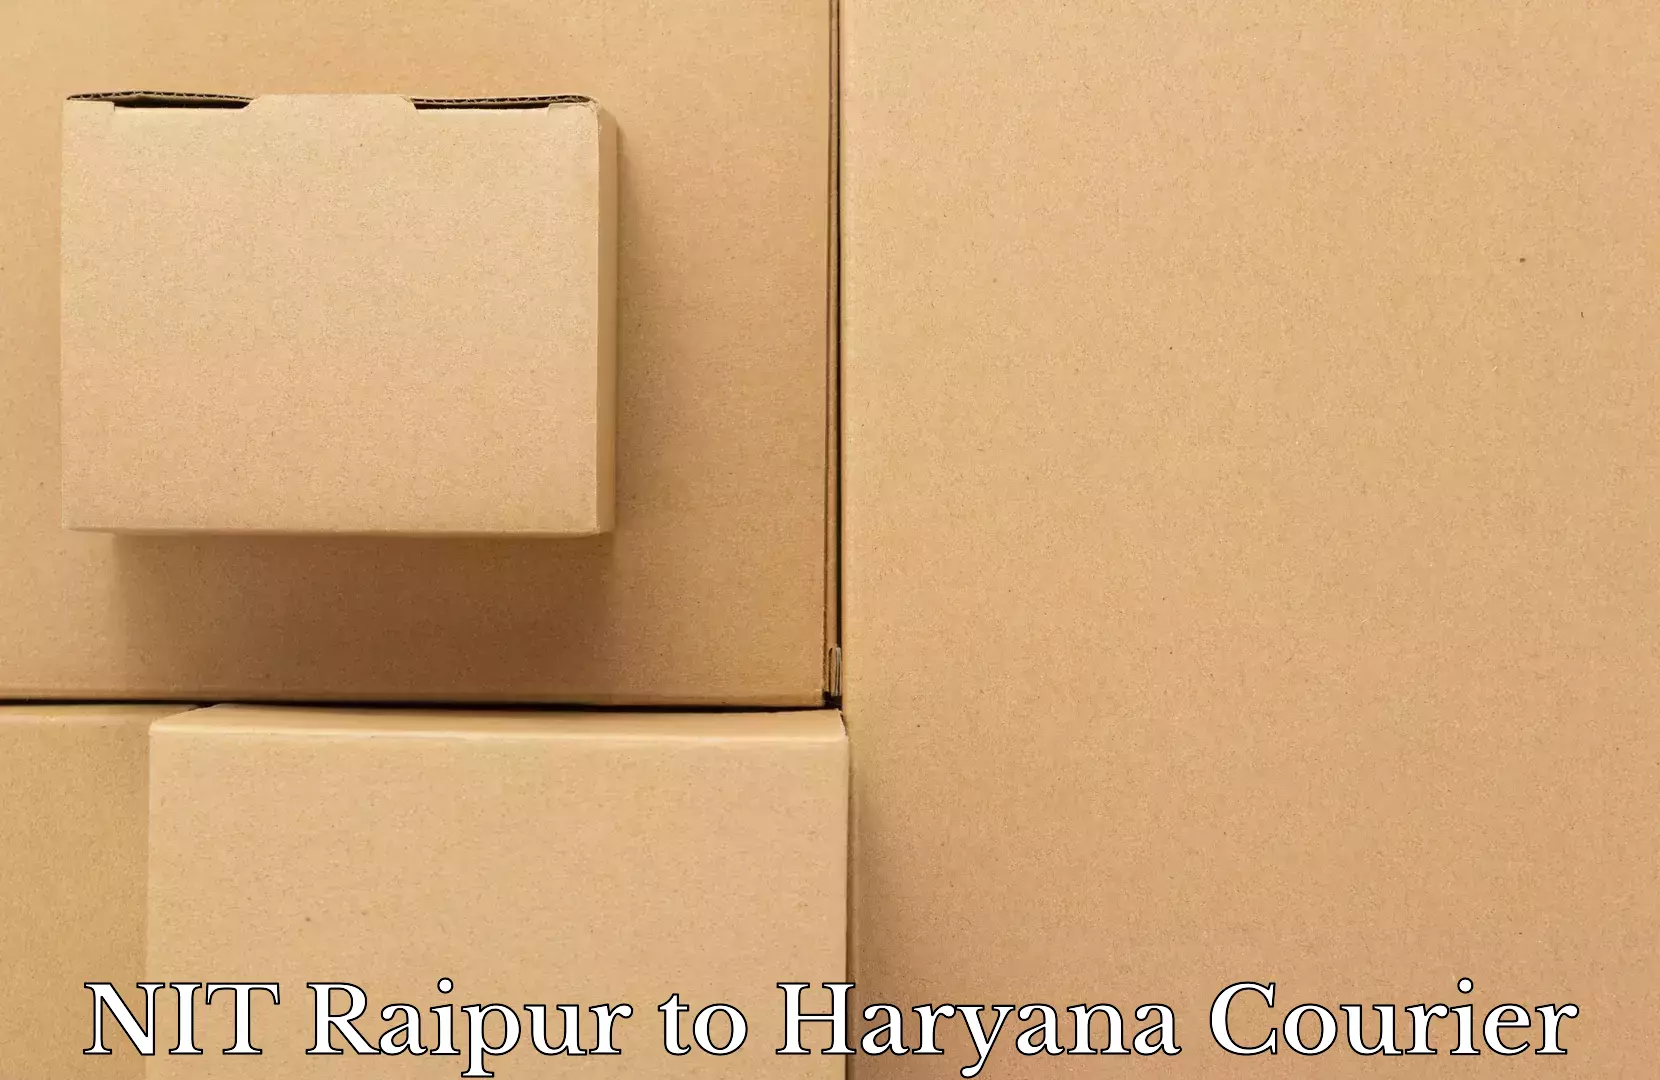 Luggage shipment tracking NIT Raipur to Abhimanyupur